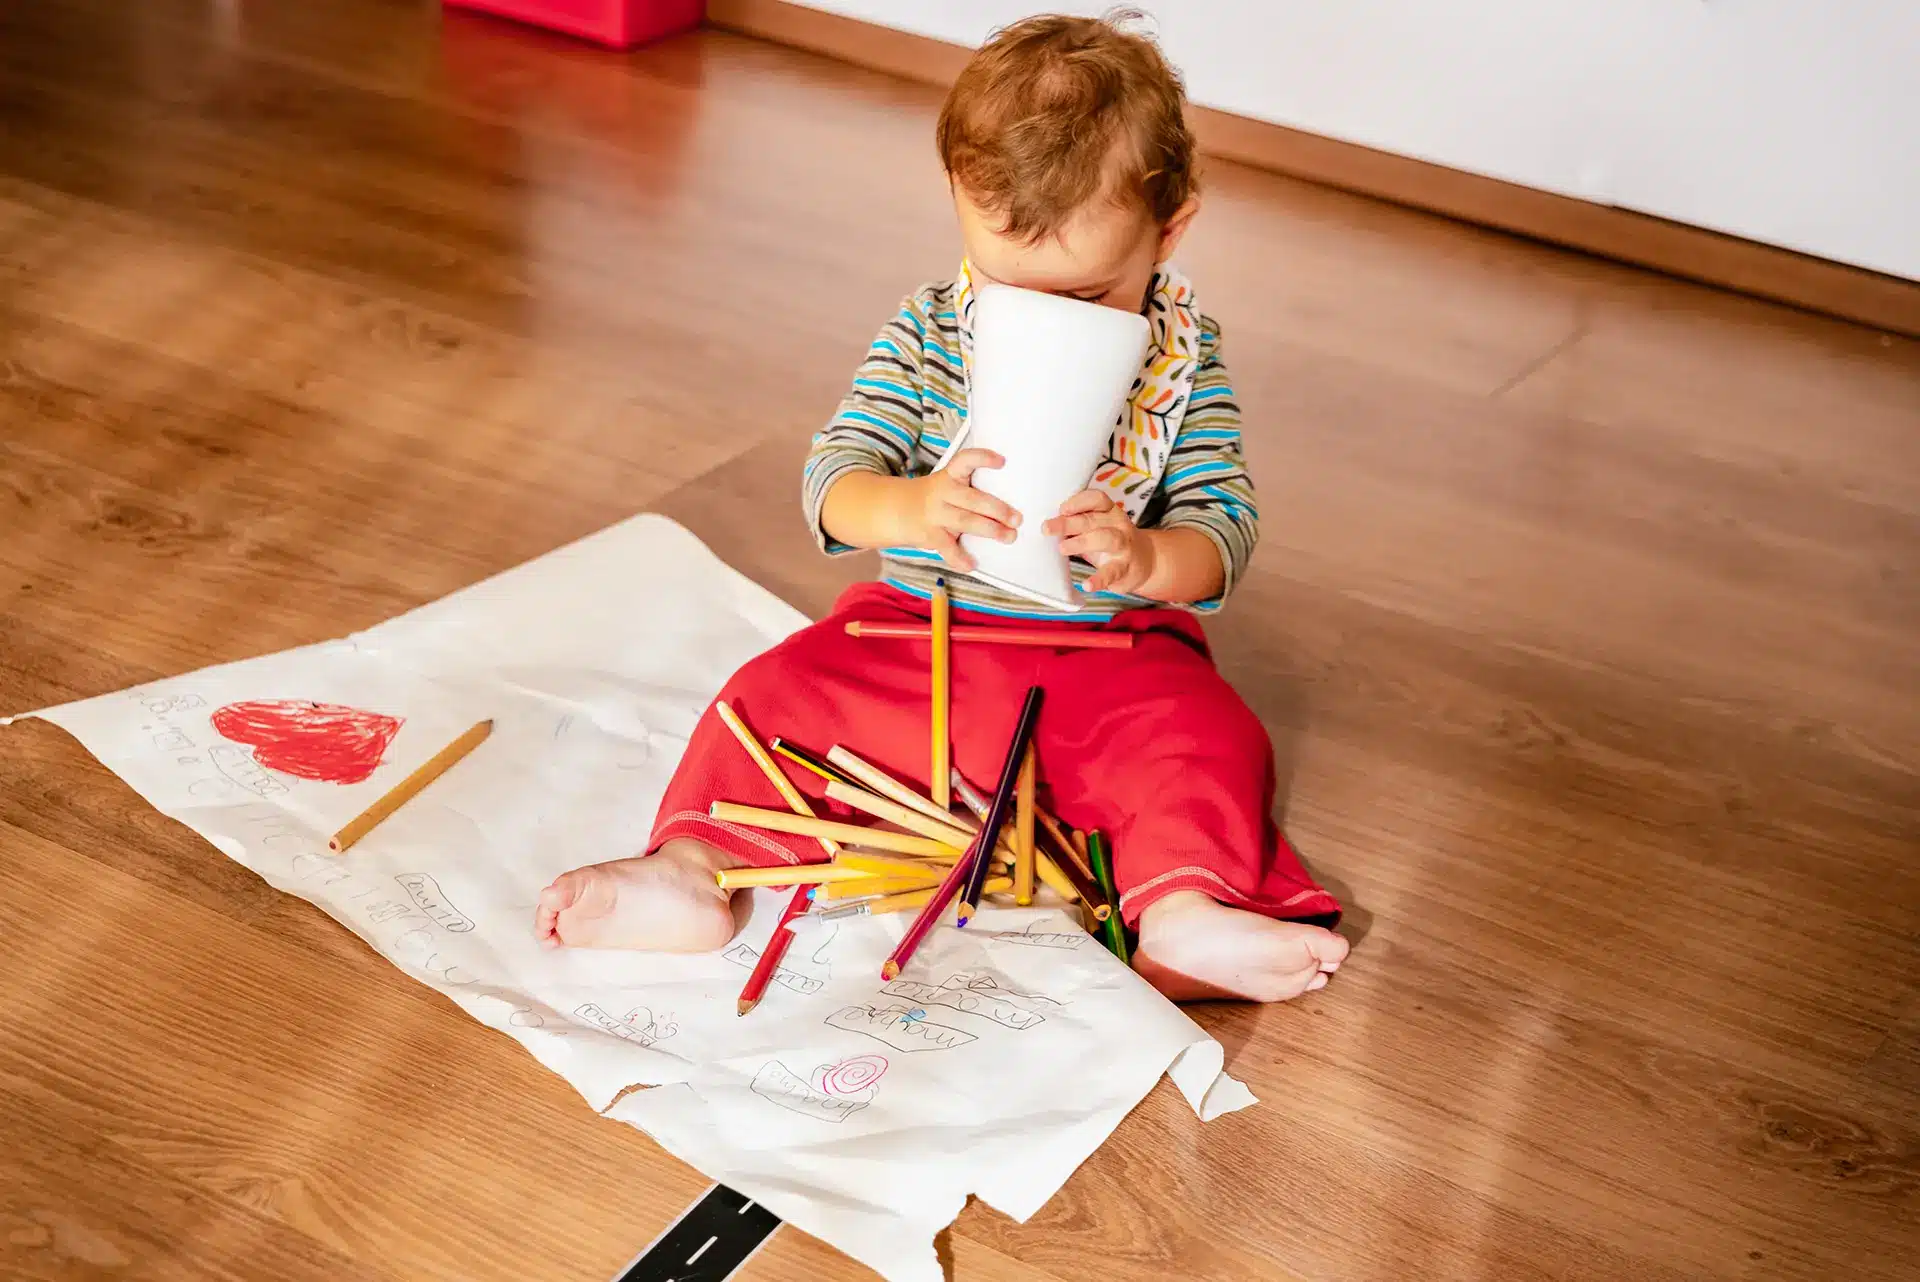 Un bébé de 1 an jouant avec des crayons sur un plancher en bois.